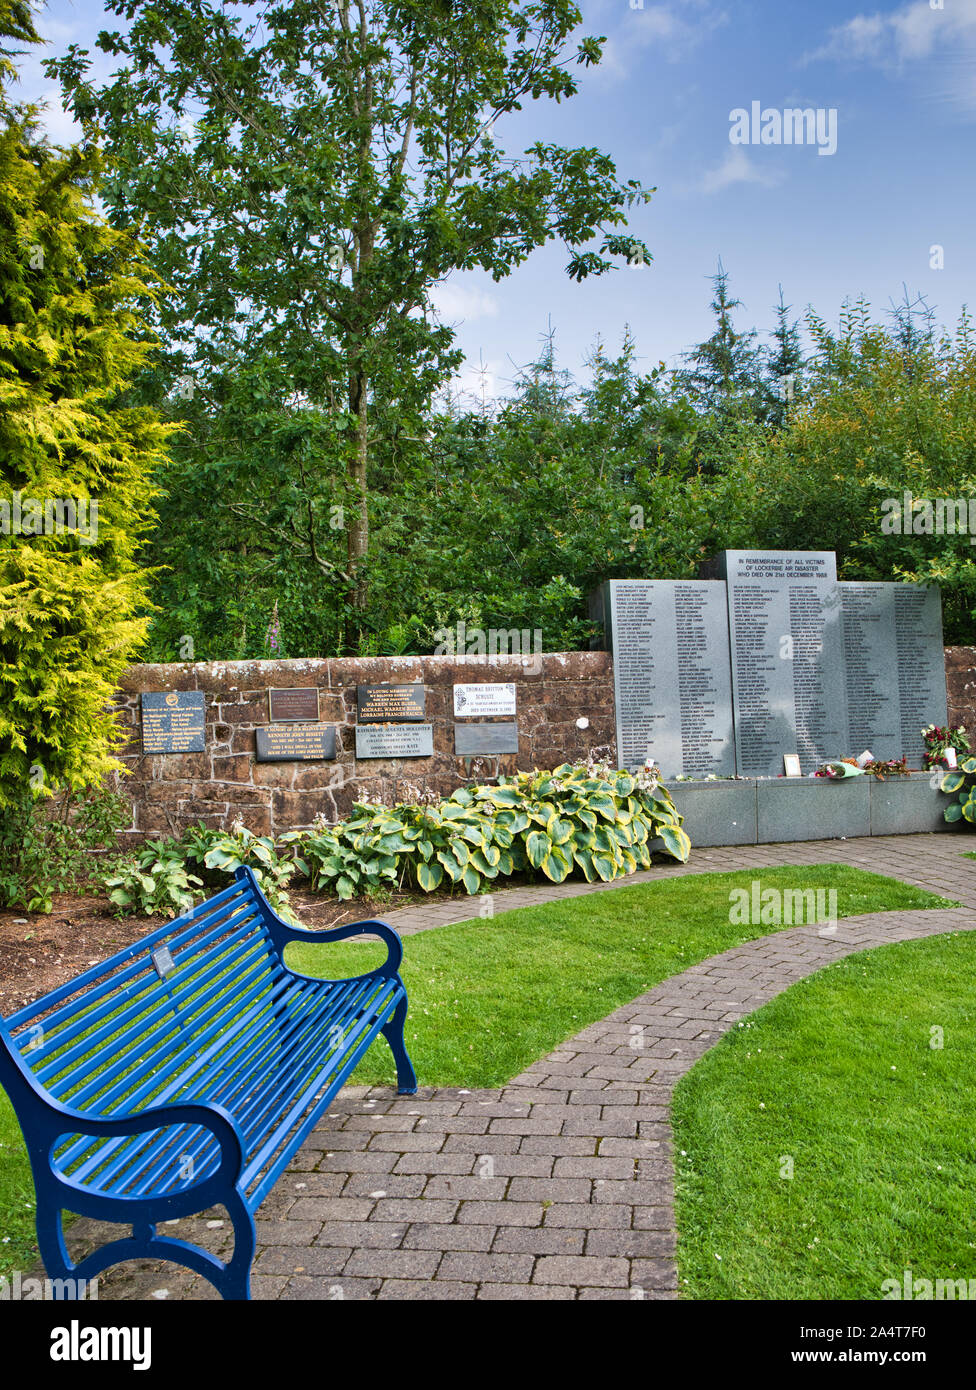 Jardín de Lockerbie de recuerdo, Dryfesdale cementerio, Lockerbie, Dumfries y Galloway, Escocia Foto de stock